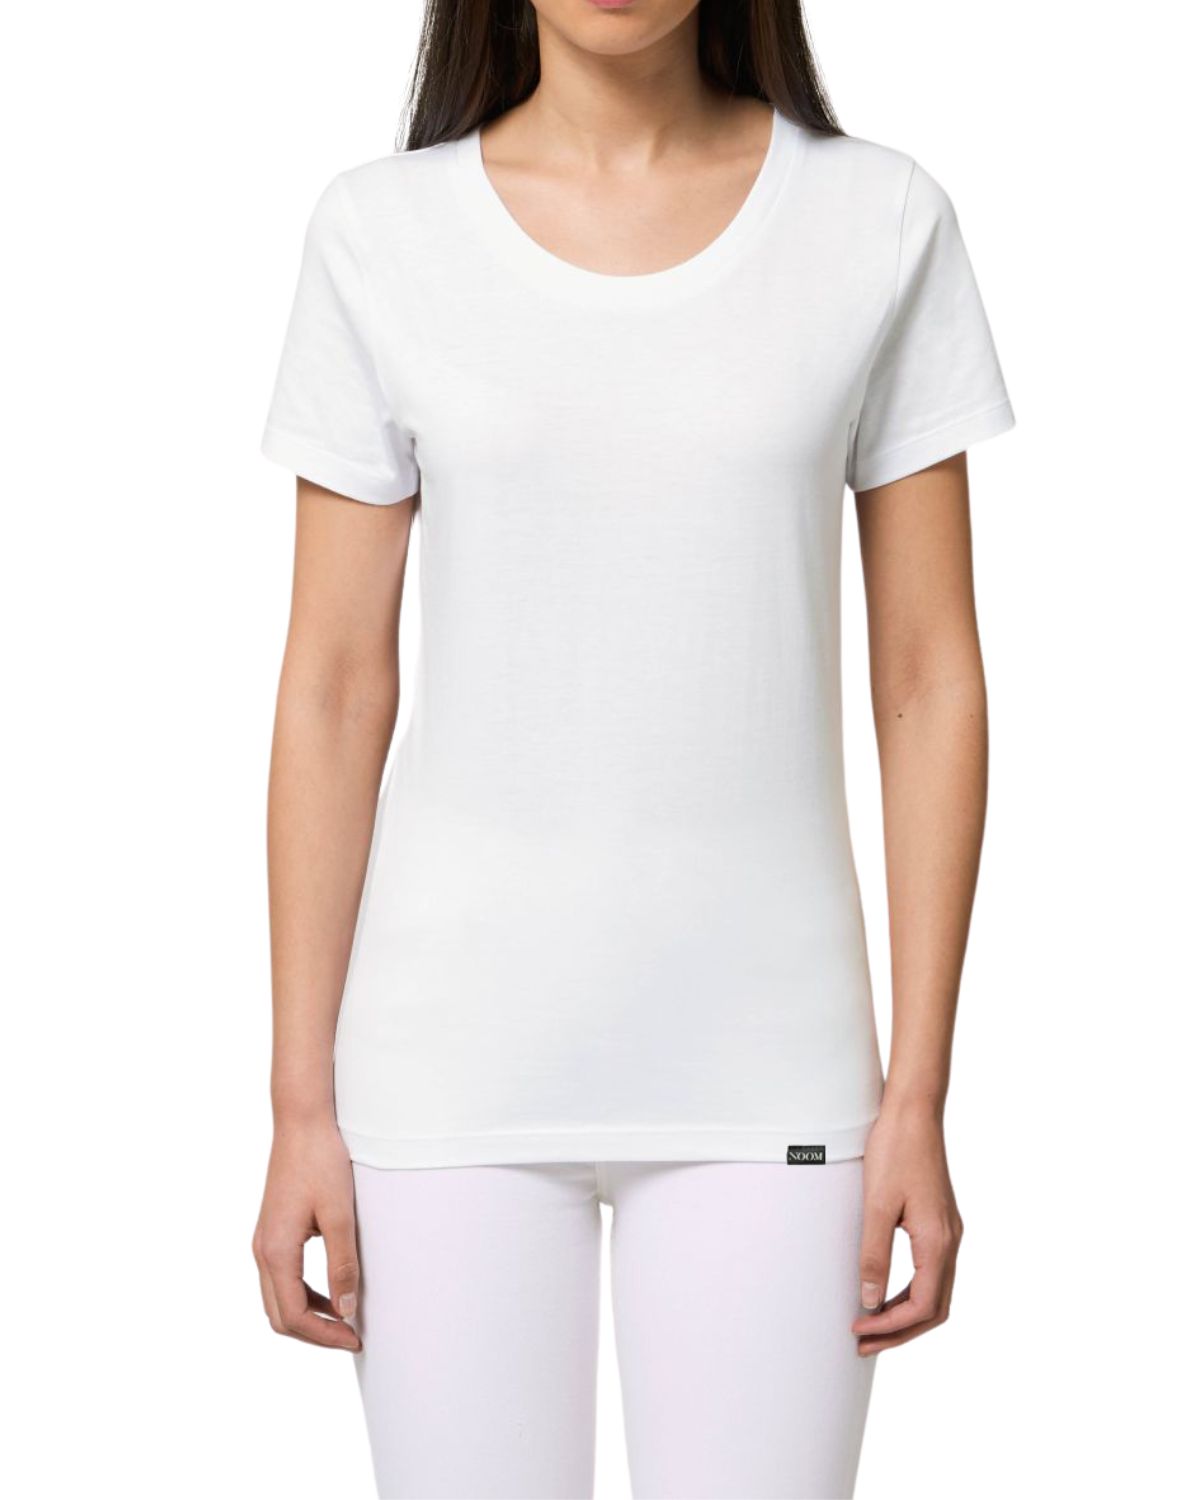 Lou White - T-Shirt Damen